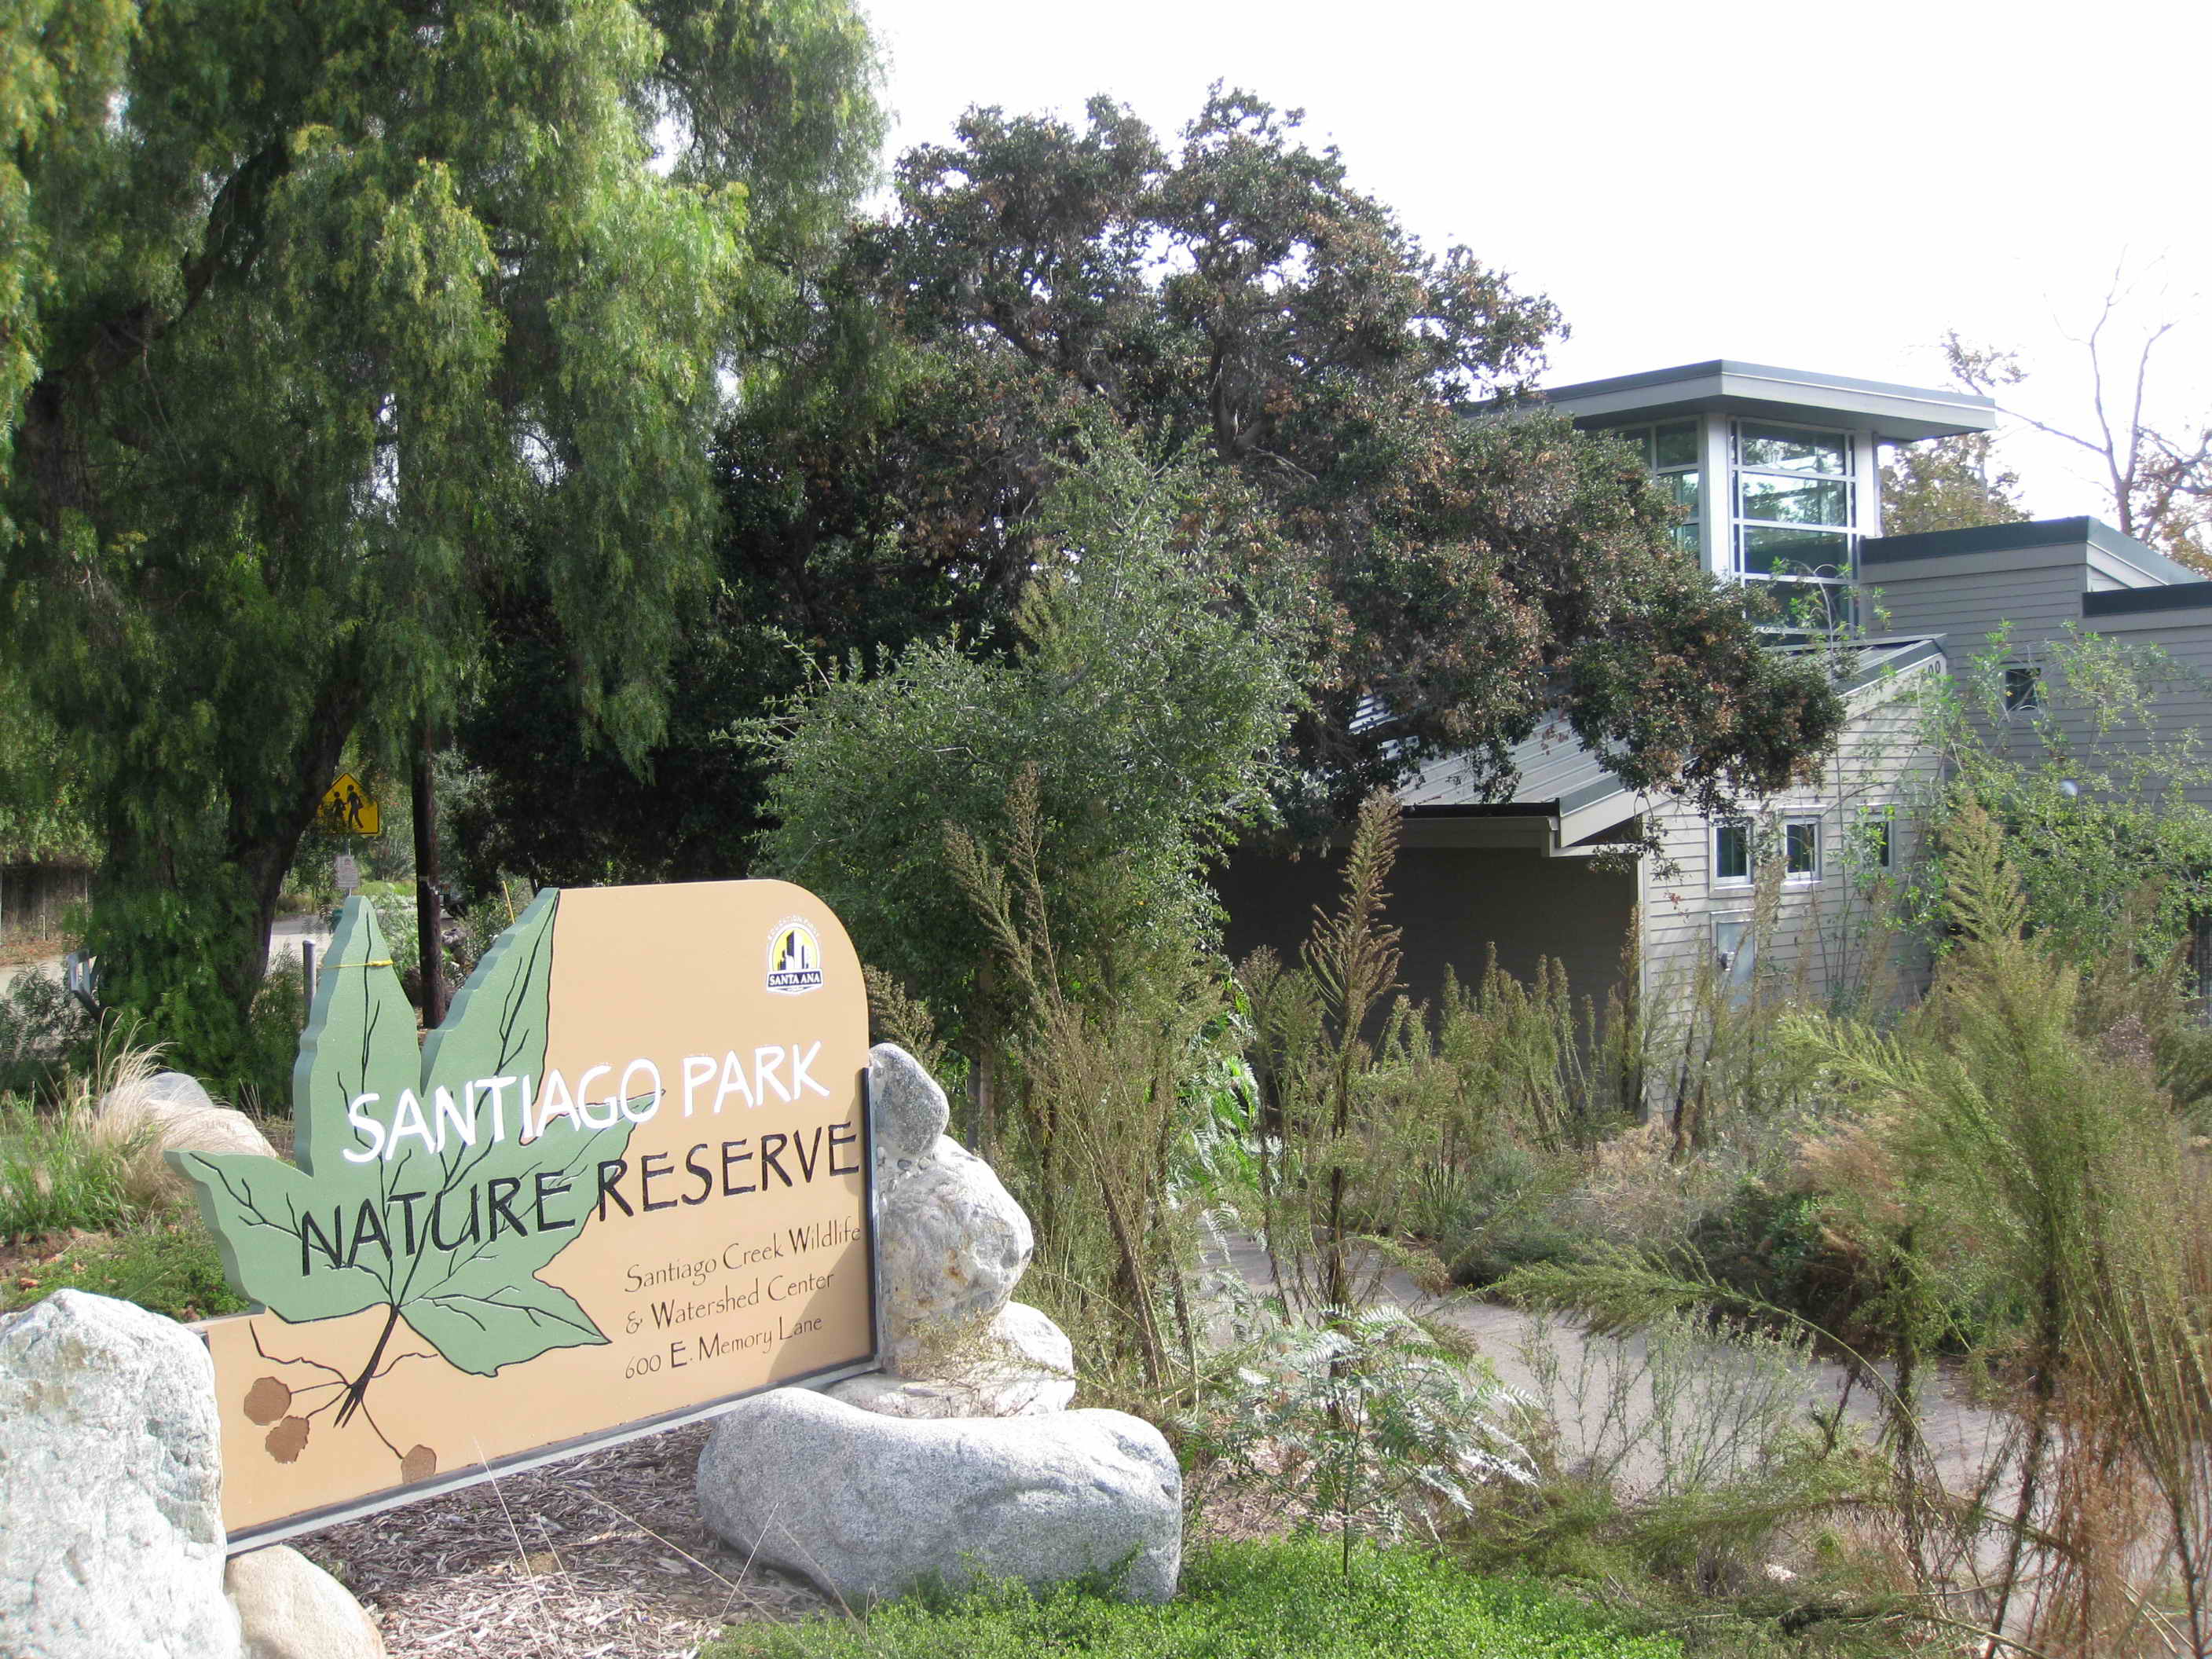 Santiago Park Nature Reserve Sign